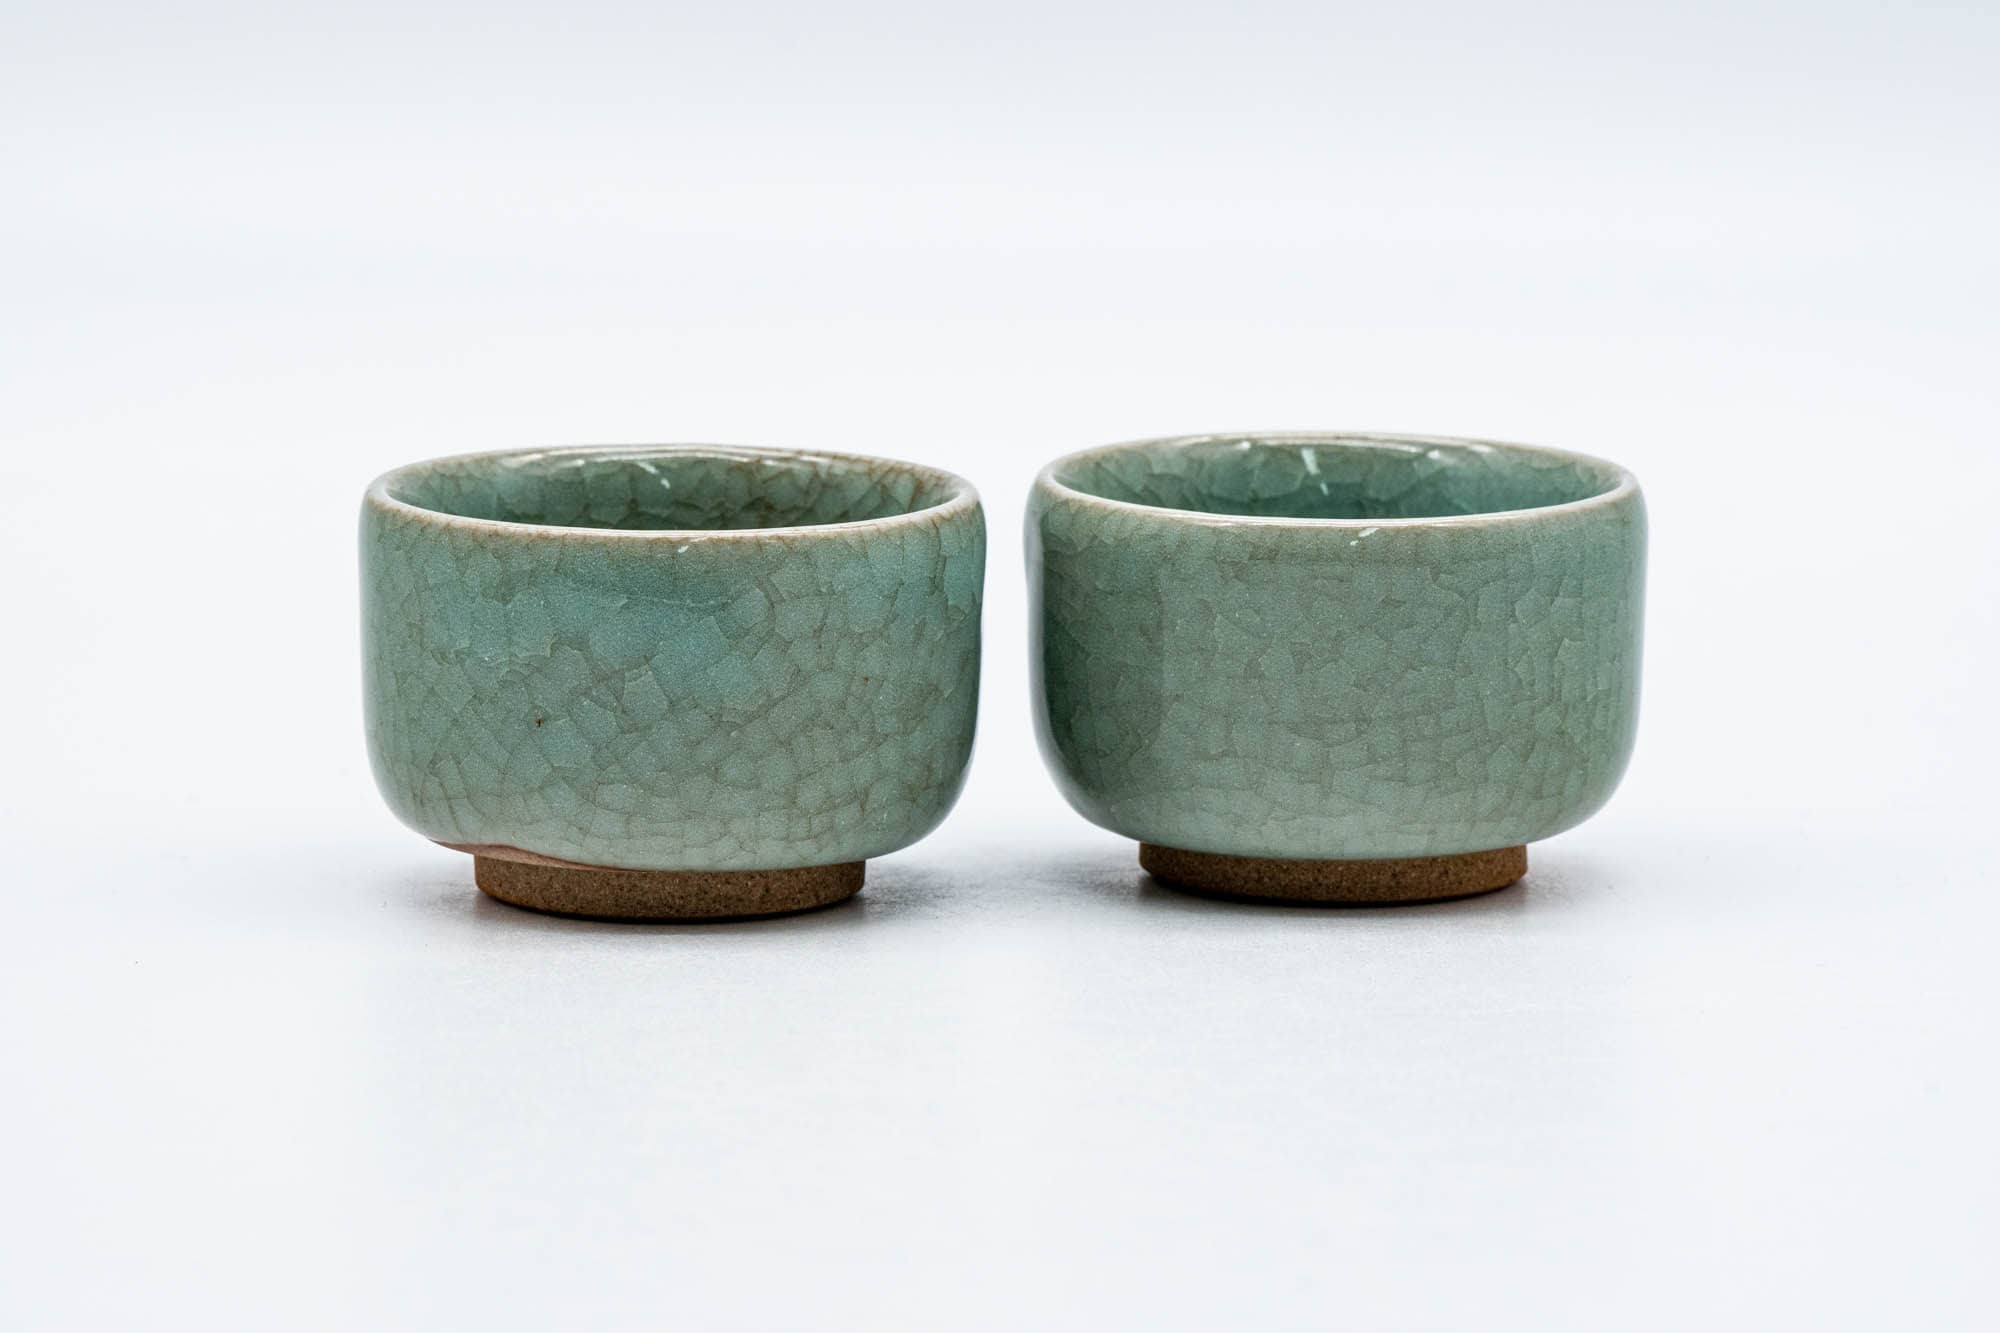 Japanese Teacups - Pair of Green Celadon Glazed Guinomi - 50ml